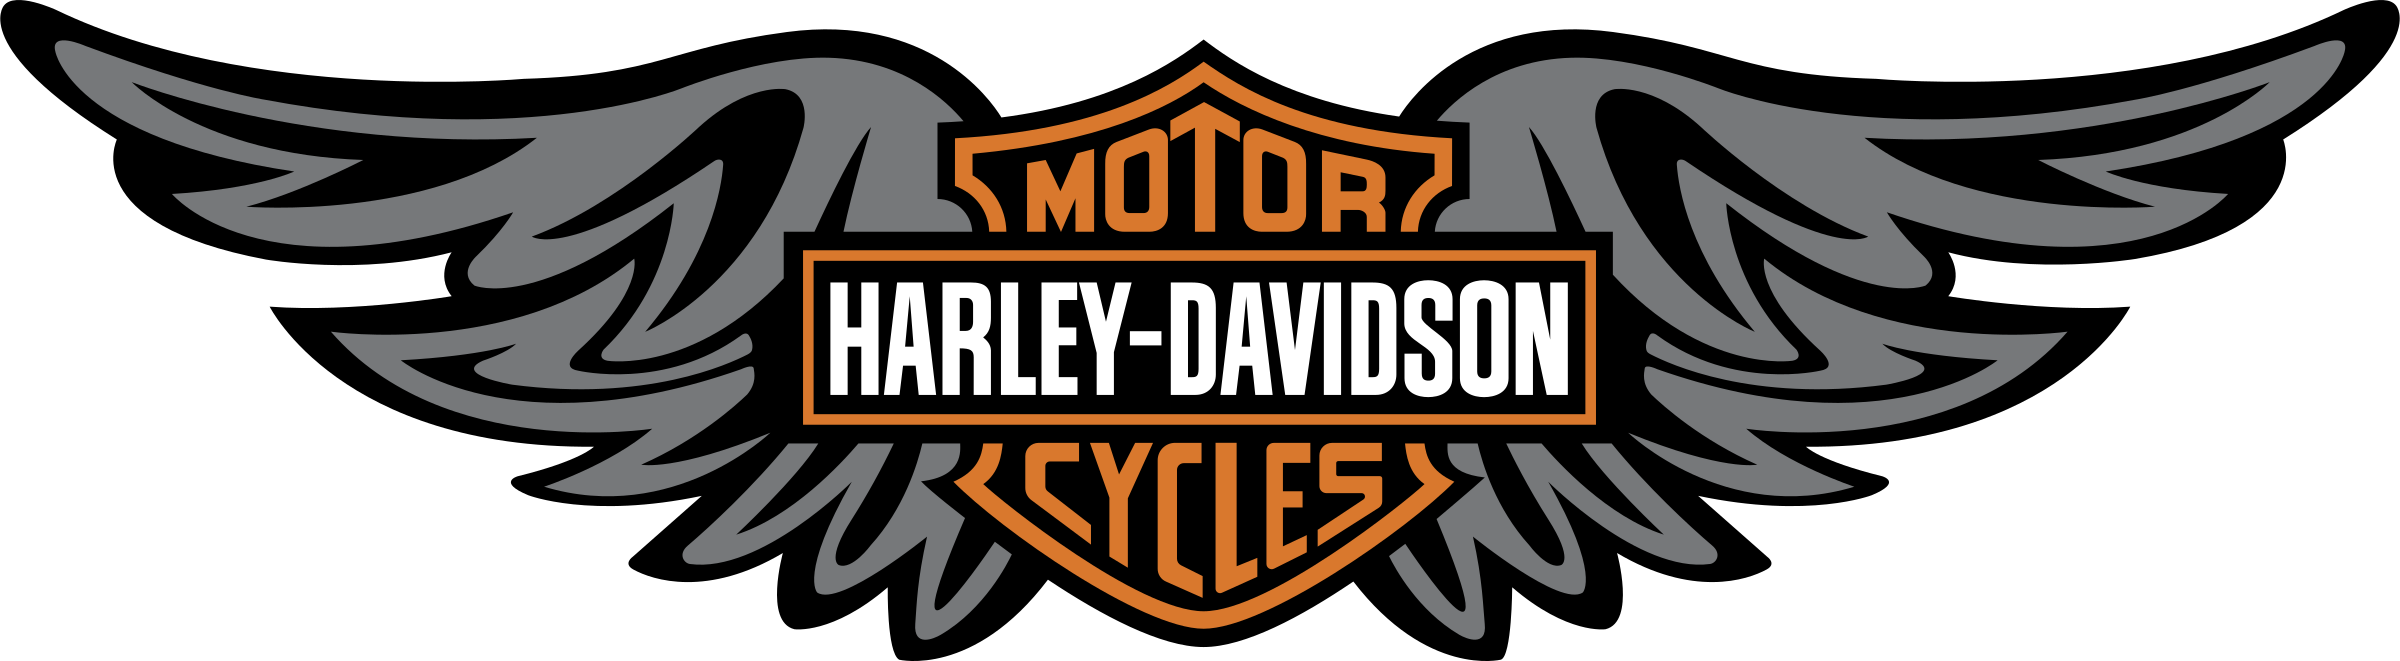 Harley Davidson Logo Motorcycle Png Download Free Transparent Harleydavidson Png